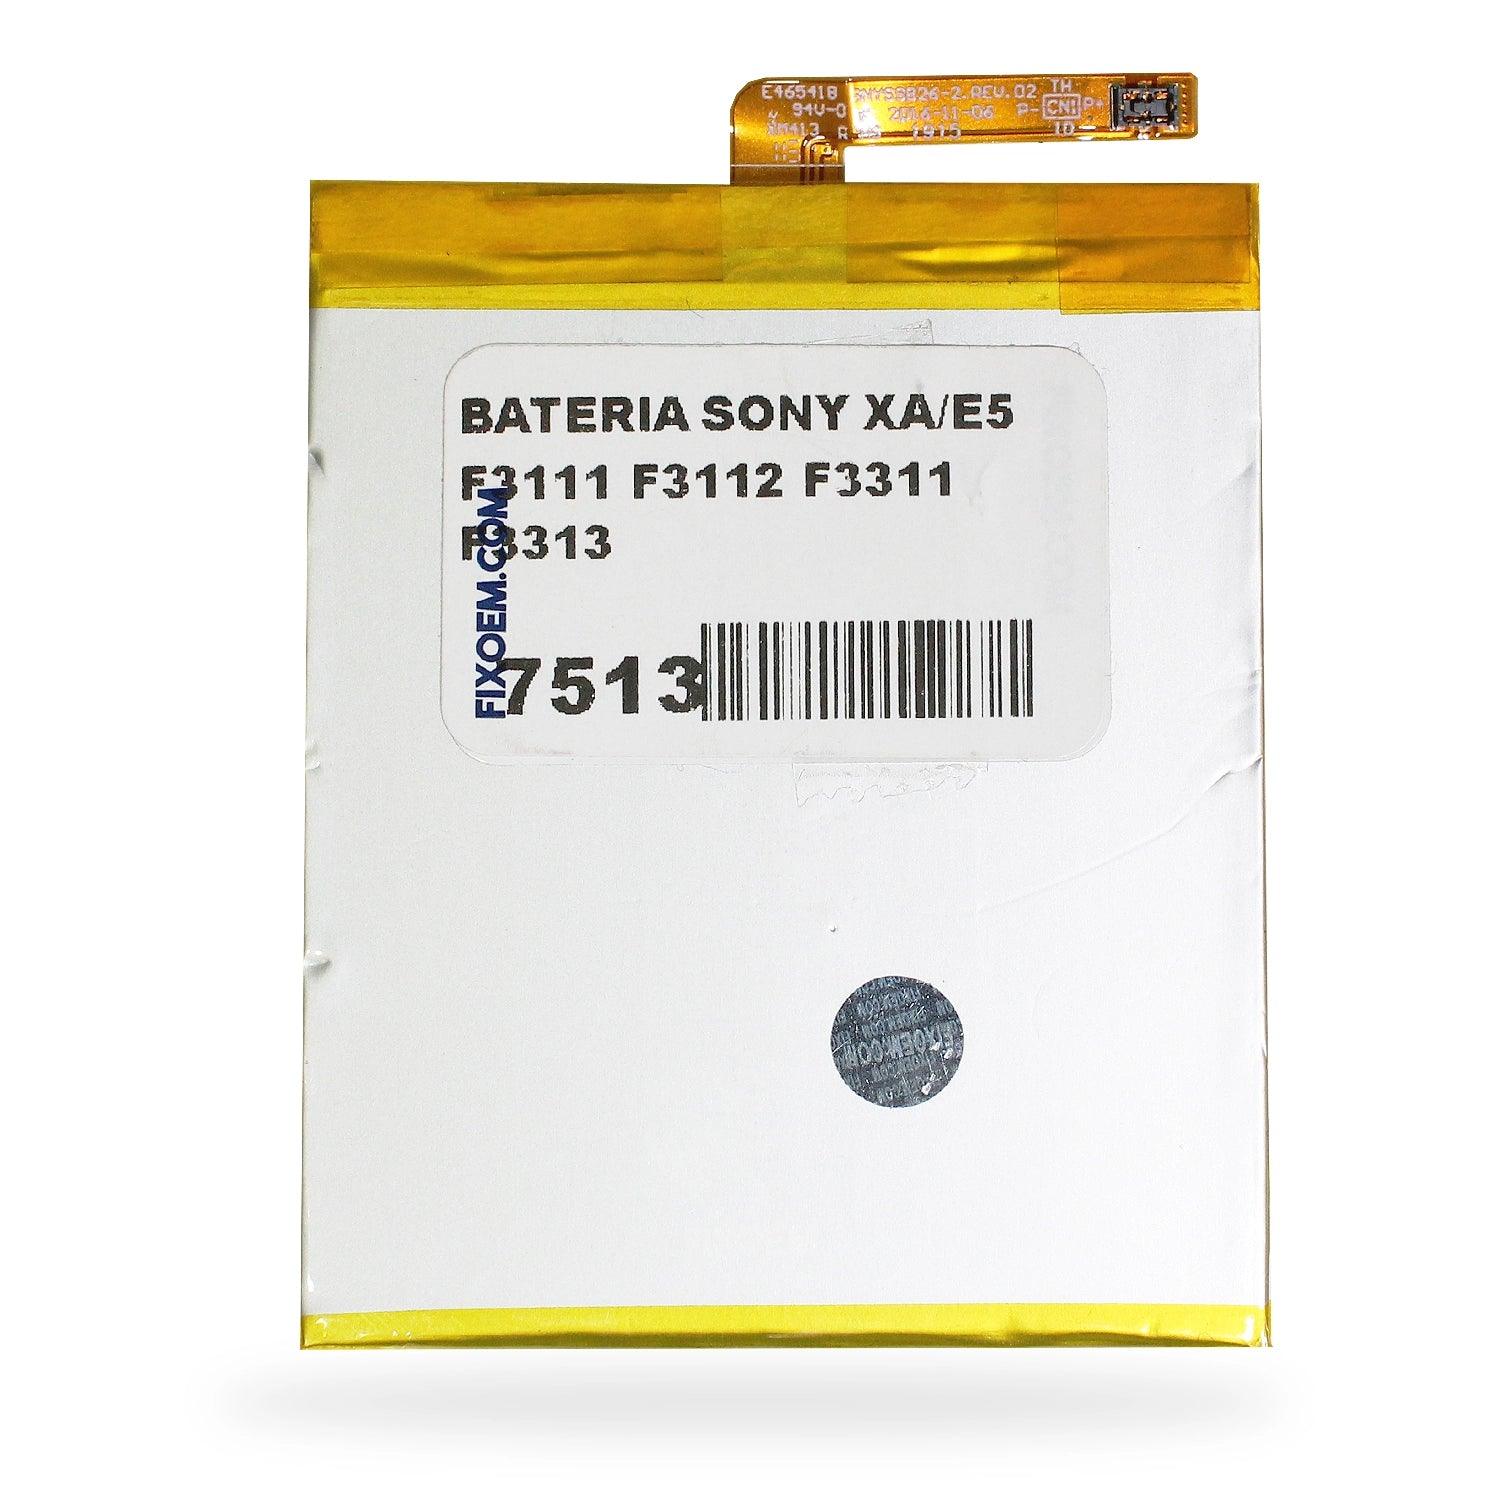 Bateria Sony Xa / E5 F3111 F3112 F3311 F3313 Gb-s10-385871-010h a solo $ 140.00 Refaccion y puestos celulares, refurbish y microelectronica.- FixOEM